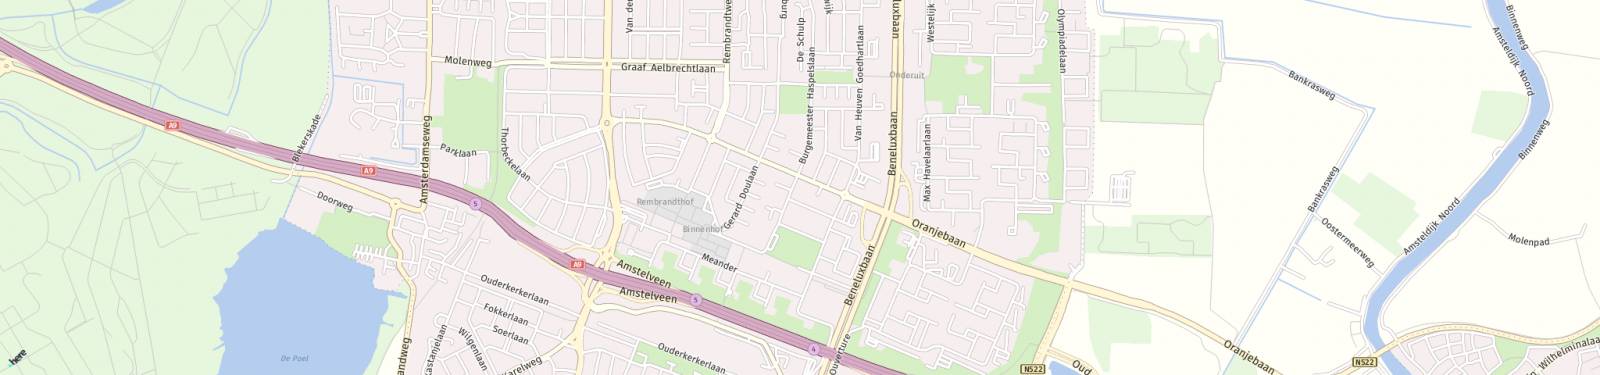 Kaart met locatie Appartement Mr. G. Groen van Prinstererlaan